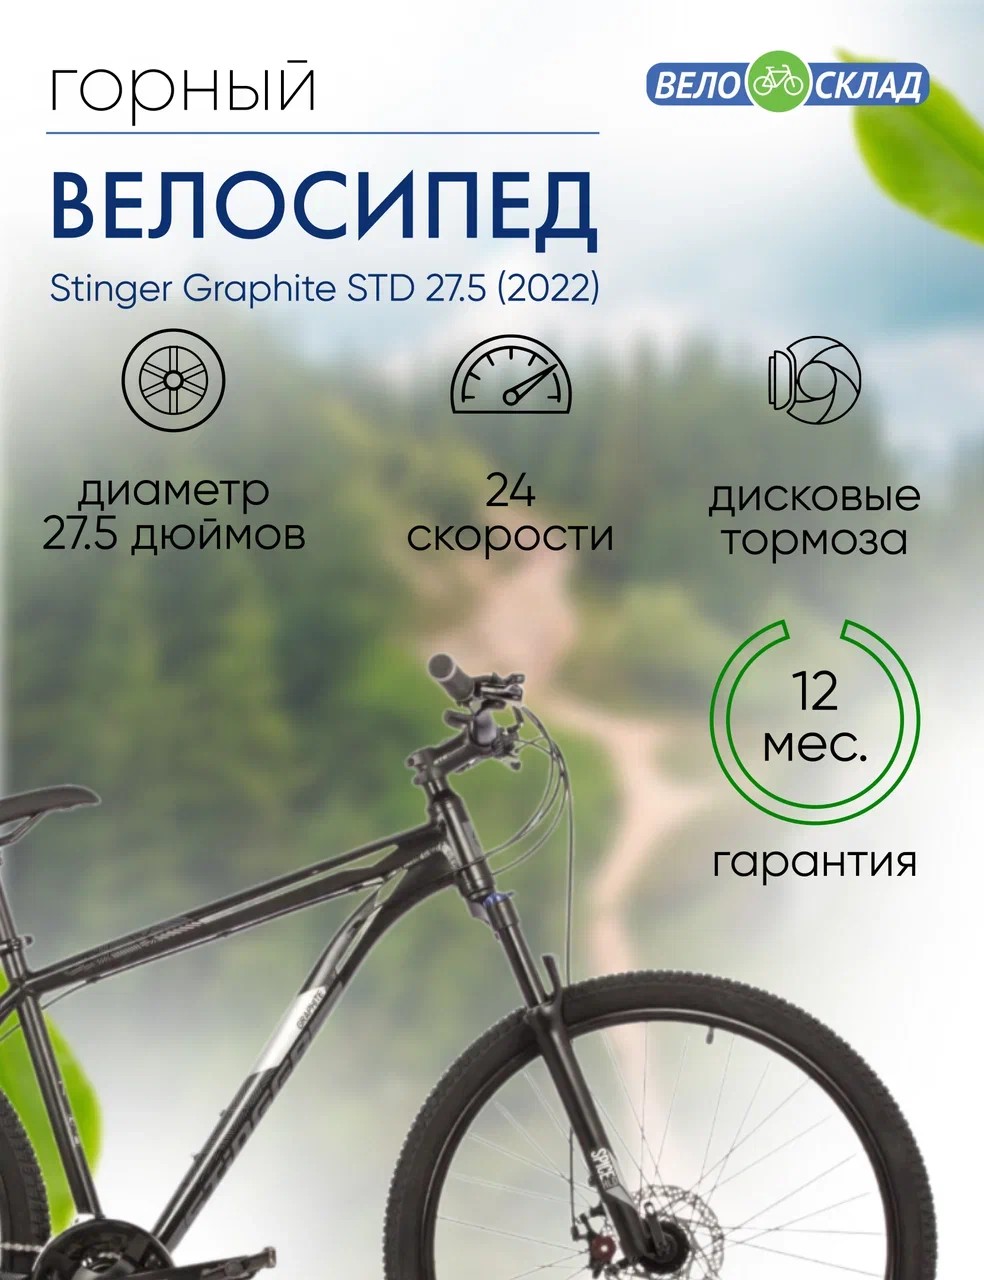 Горный велосипед Stinger Graphite STD 27.5, год 2022, цвет Черный, ростовка 16